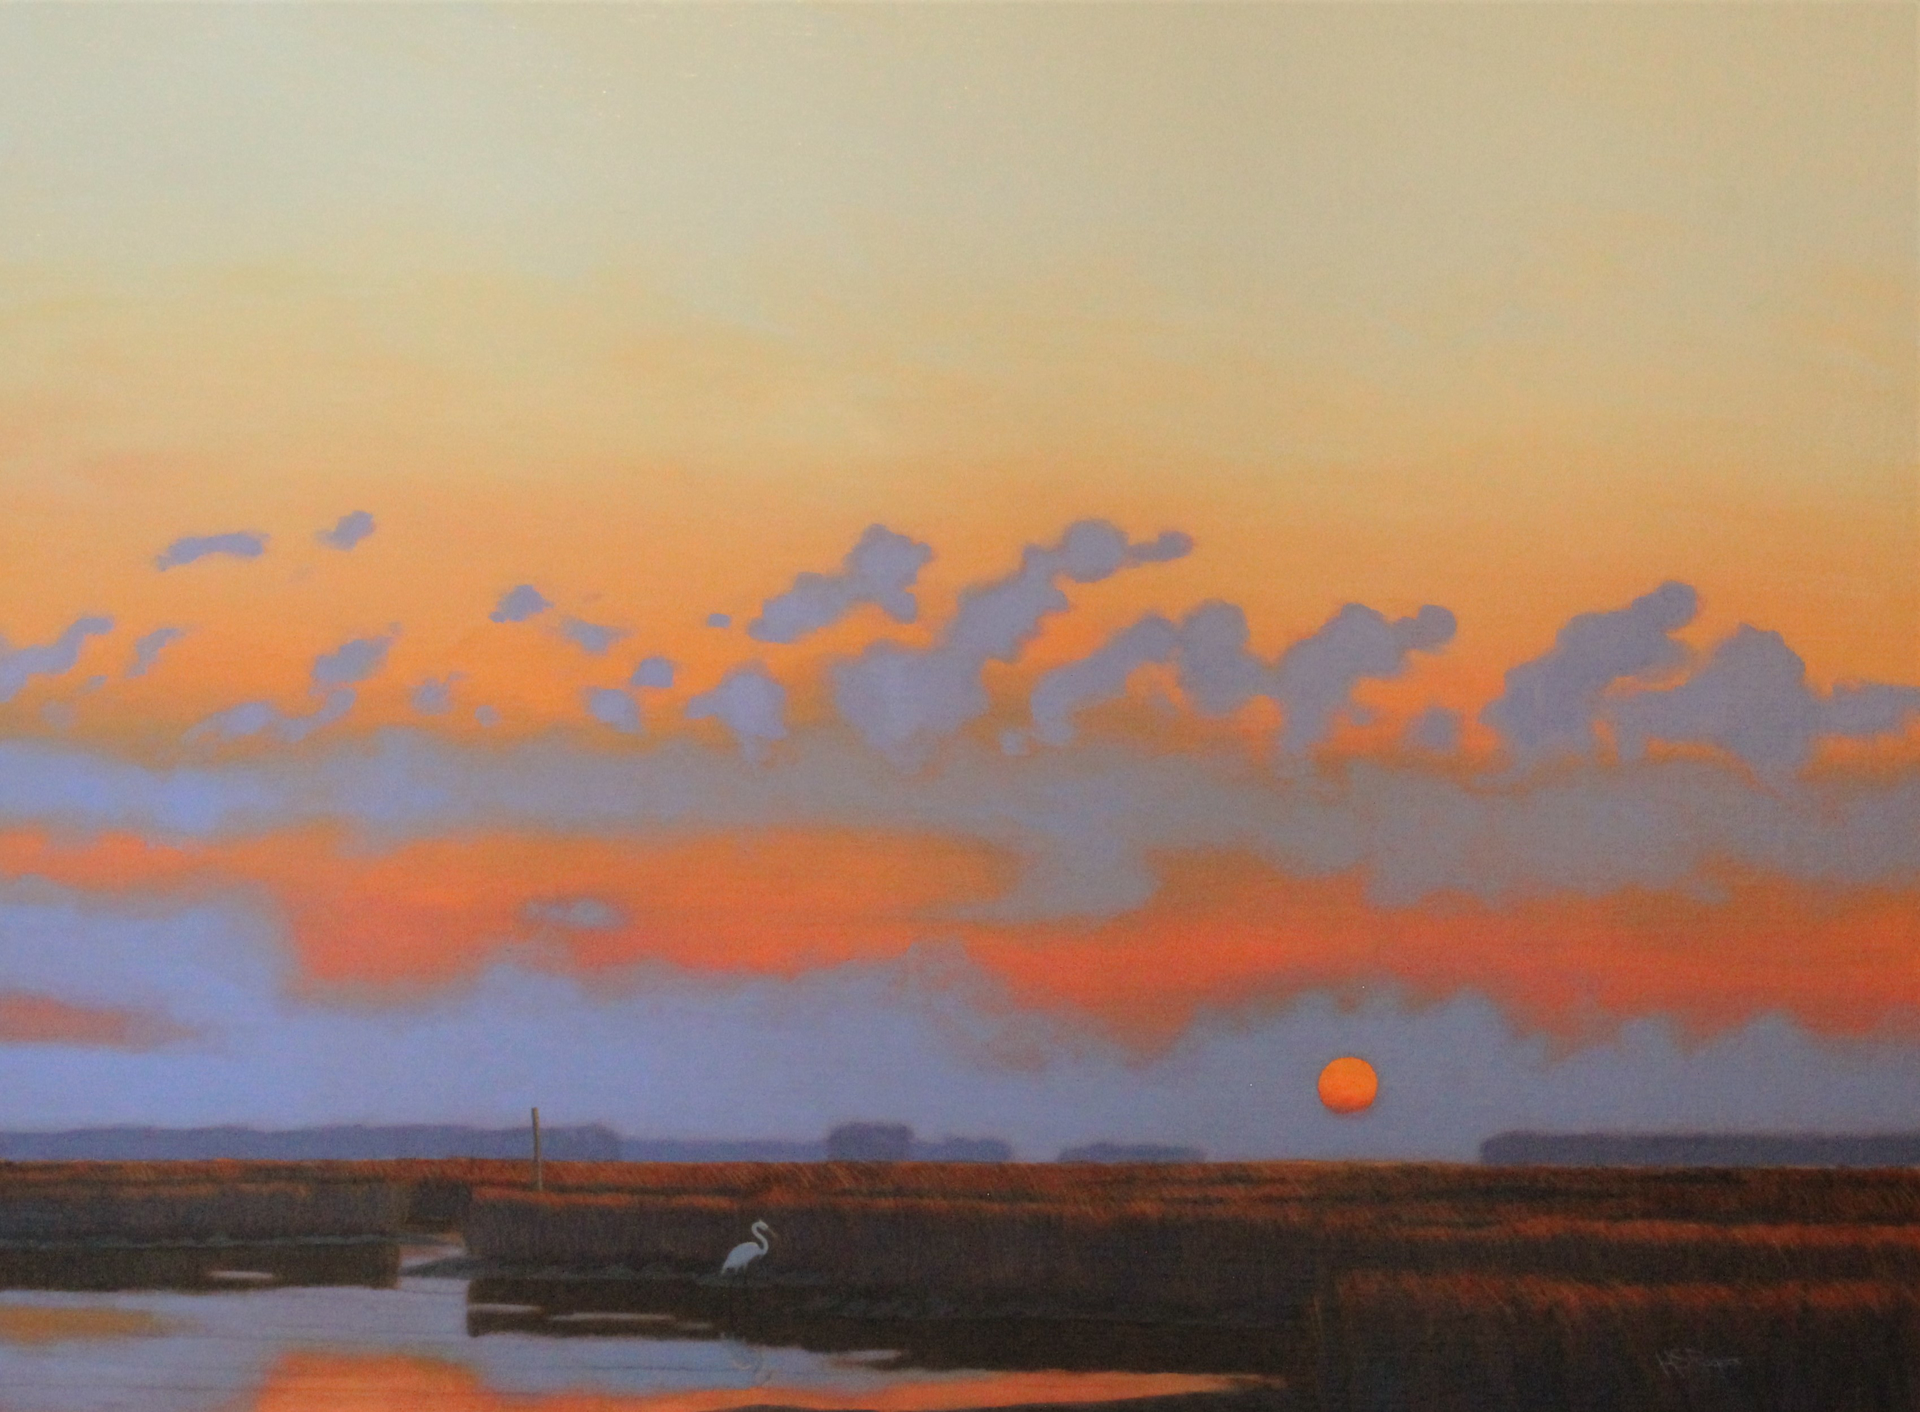 Marsh at Dusk by Steve Rogers